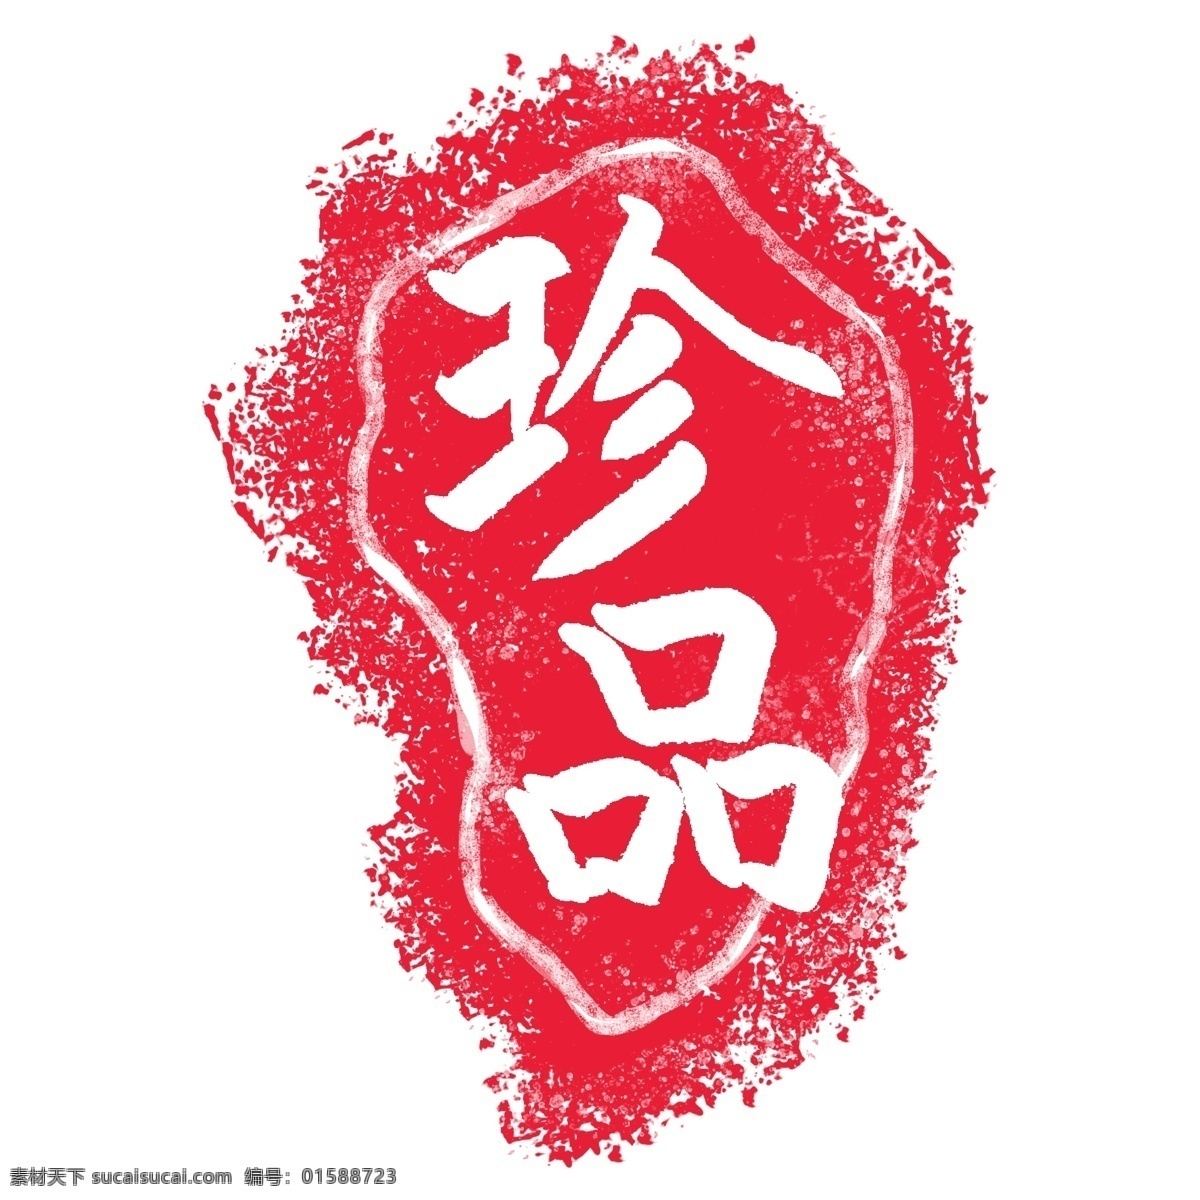 立体 红色 珍品 插图 中国风印章 不规则 形状 印章 古典印章 水墨印章 国粹 珍品插图 卡通创意